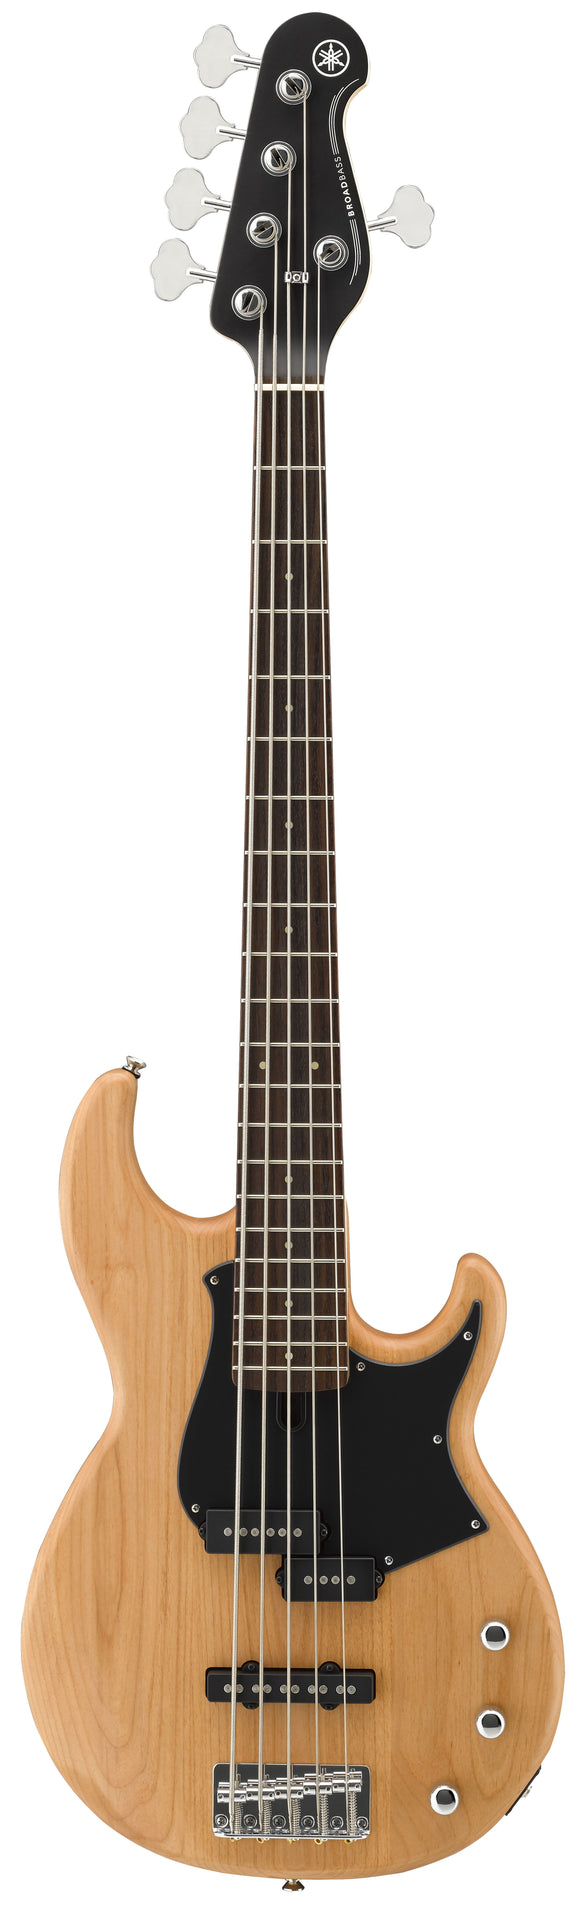 Yamaha Model BB235YNS Bass Guitar